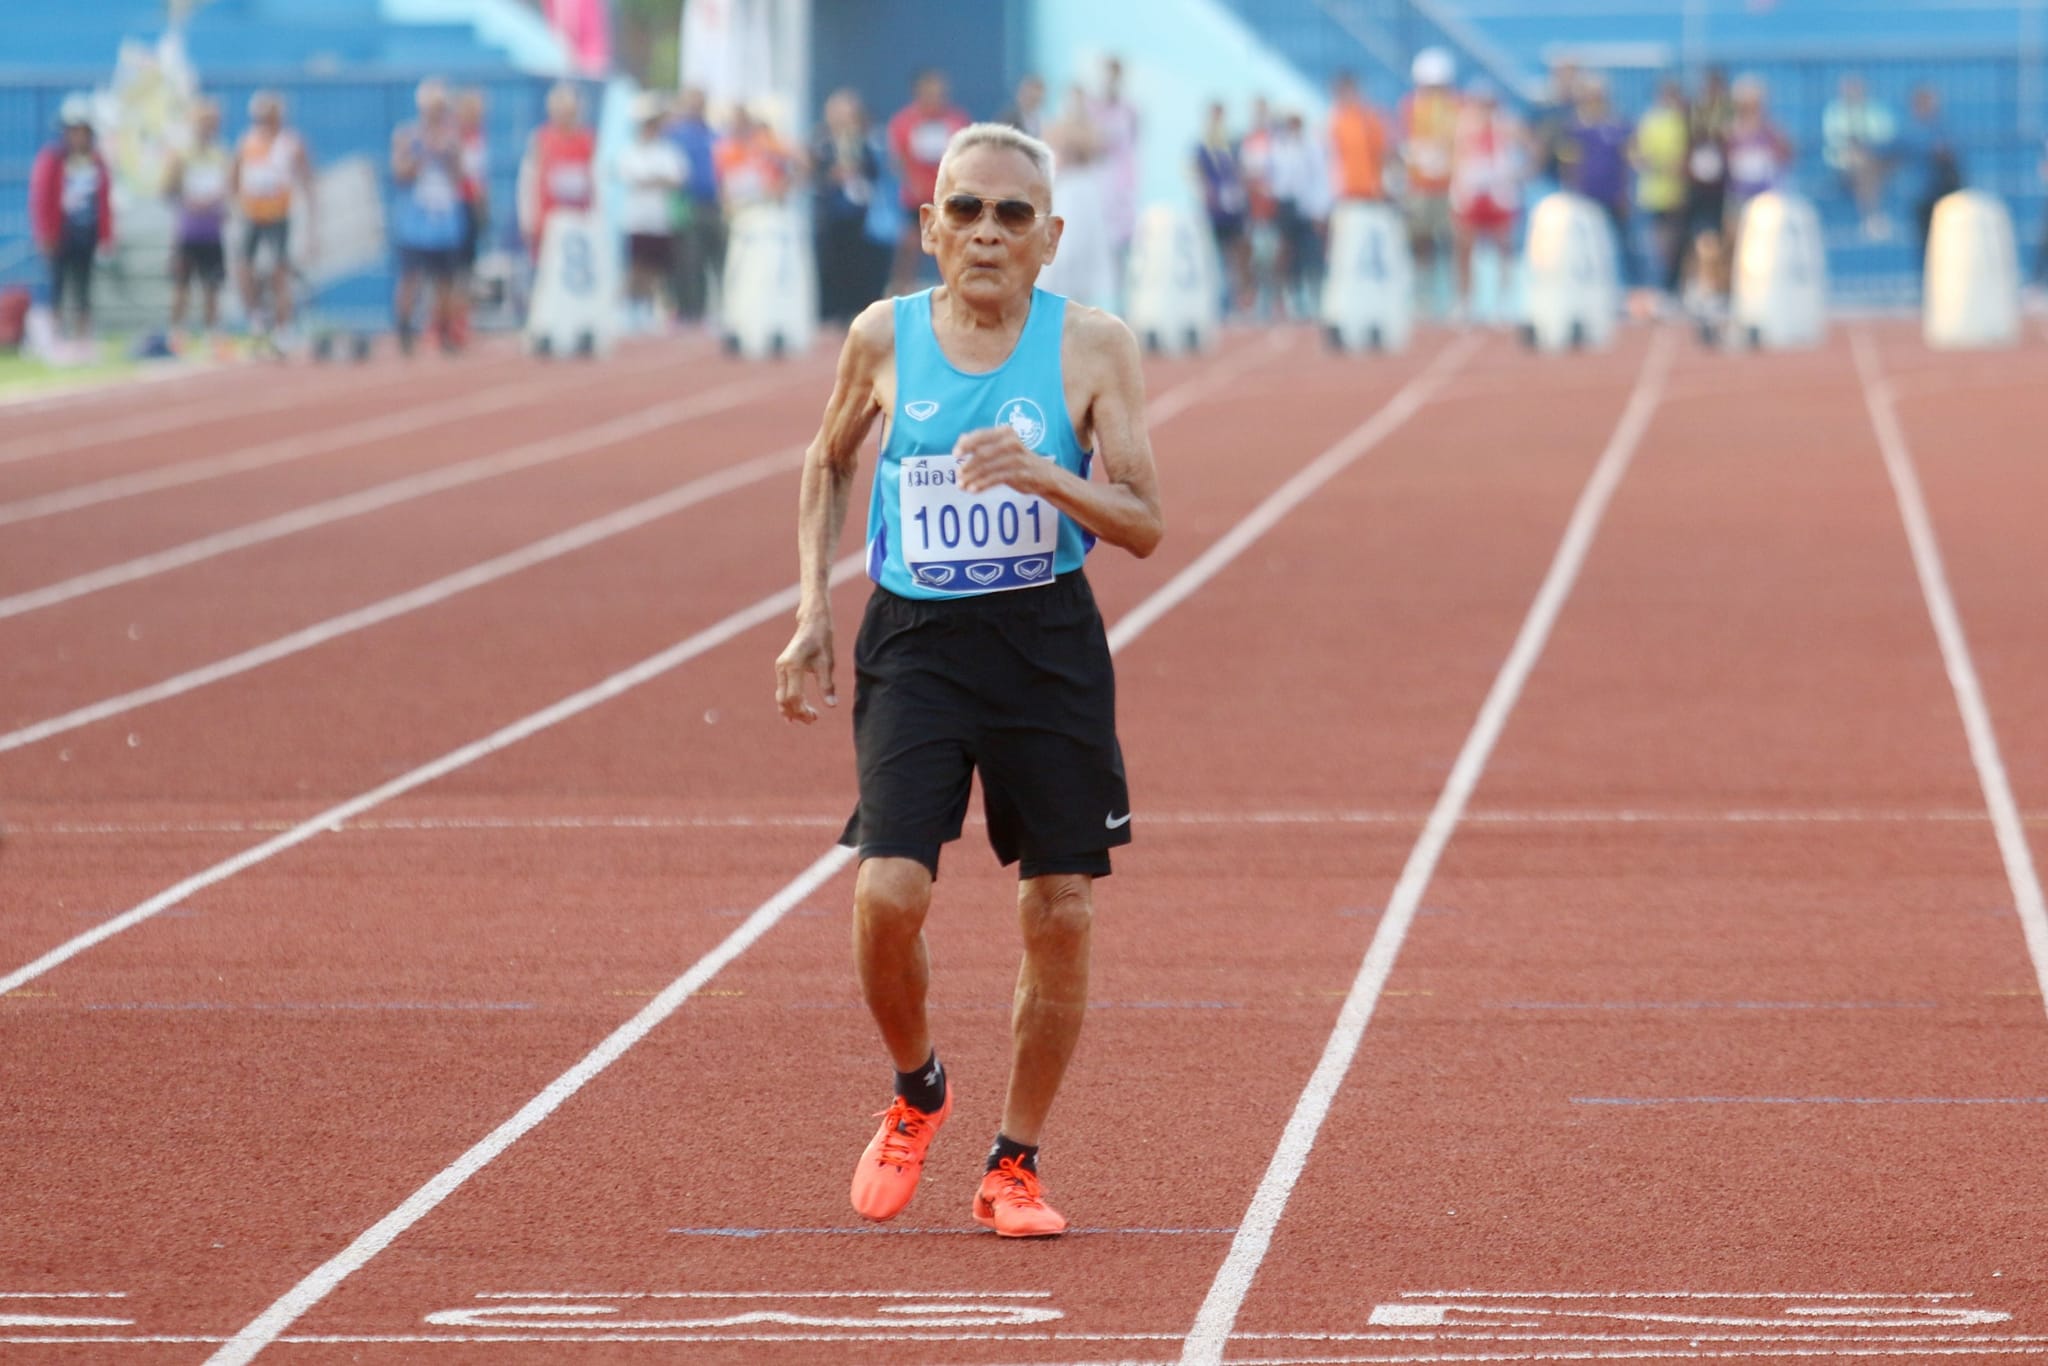 104-year-old runner Thailand - Sawang Janpram